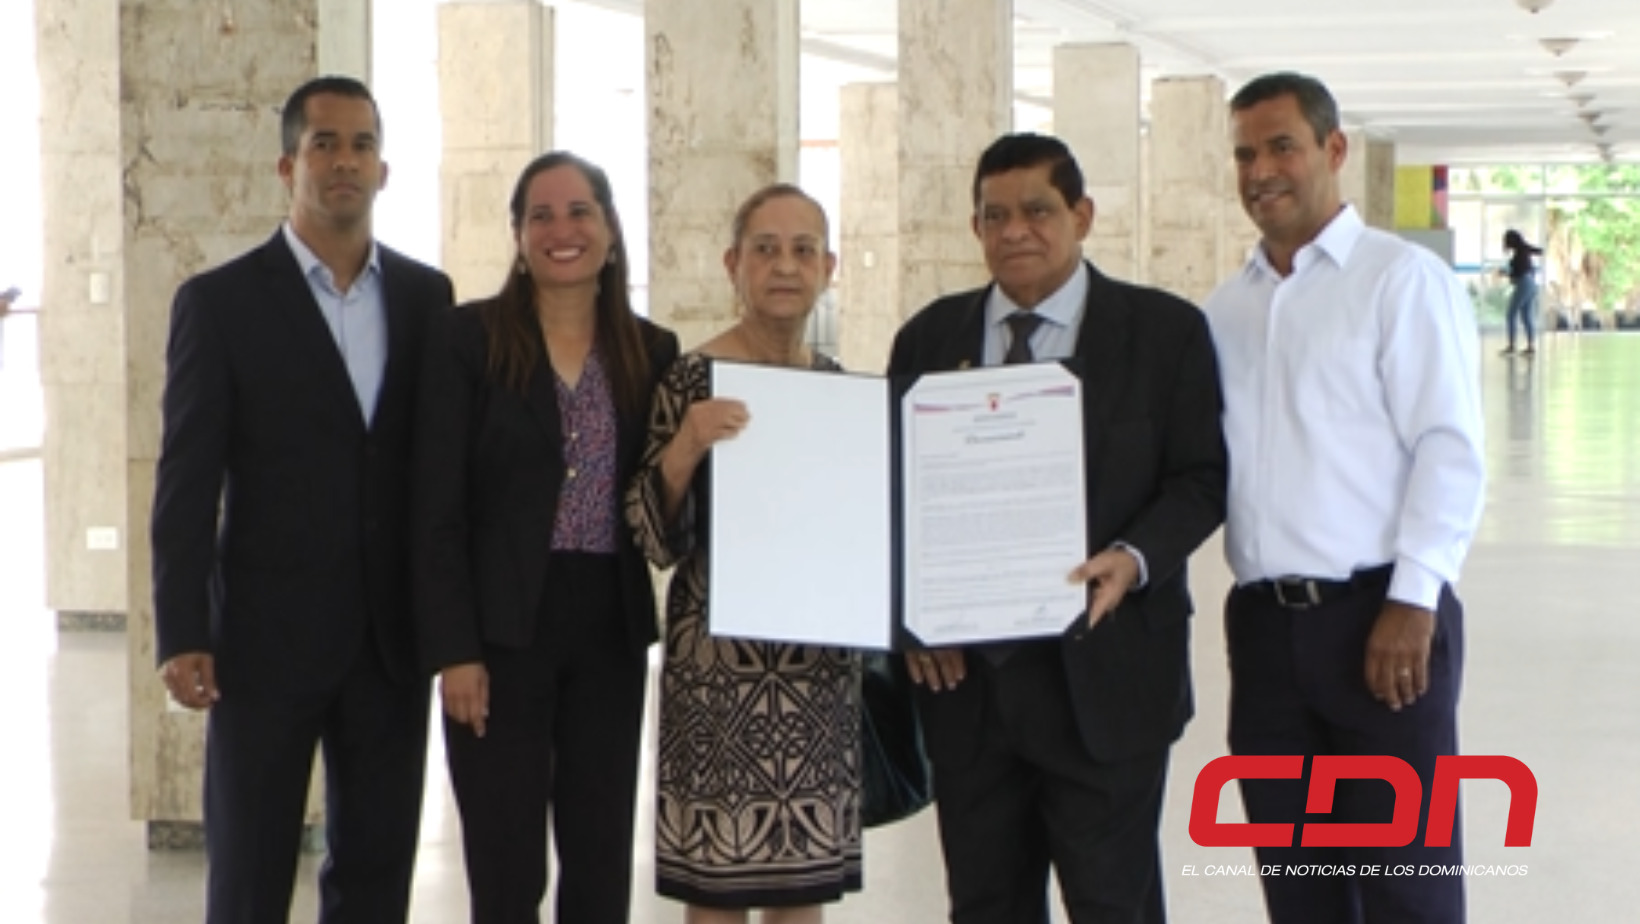 Personalidades que recibieron reconocimiento por parte del Concejo edilicio ayuntamiento de Santiago. Foto CDN Digital